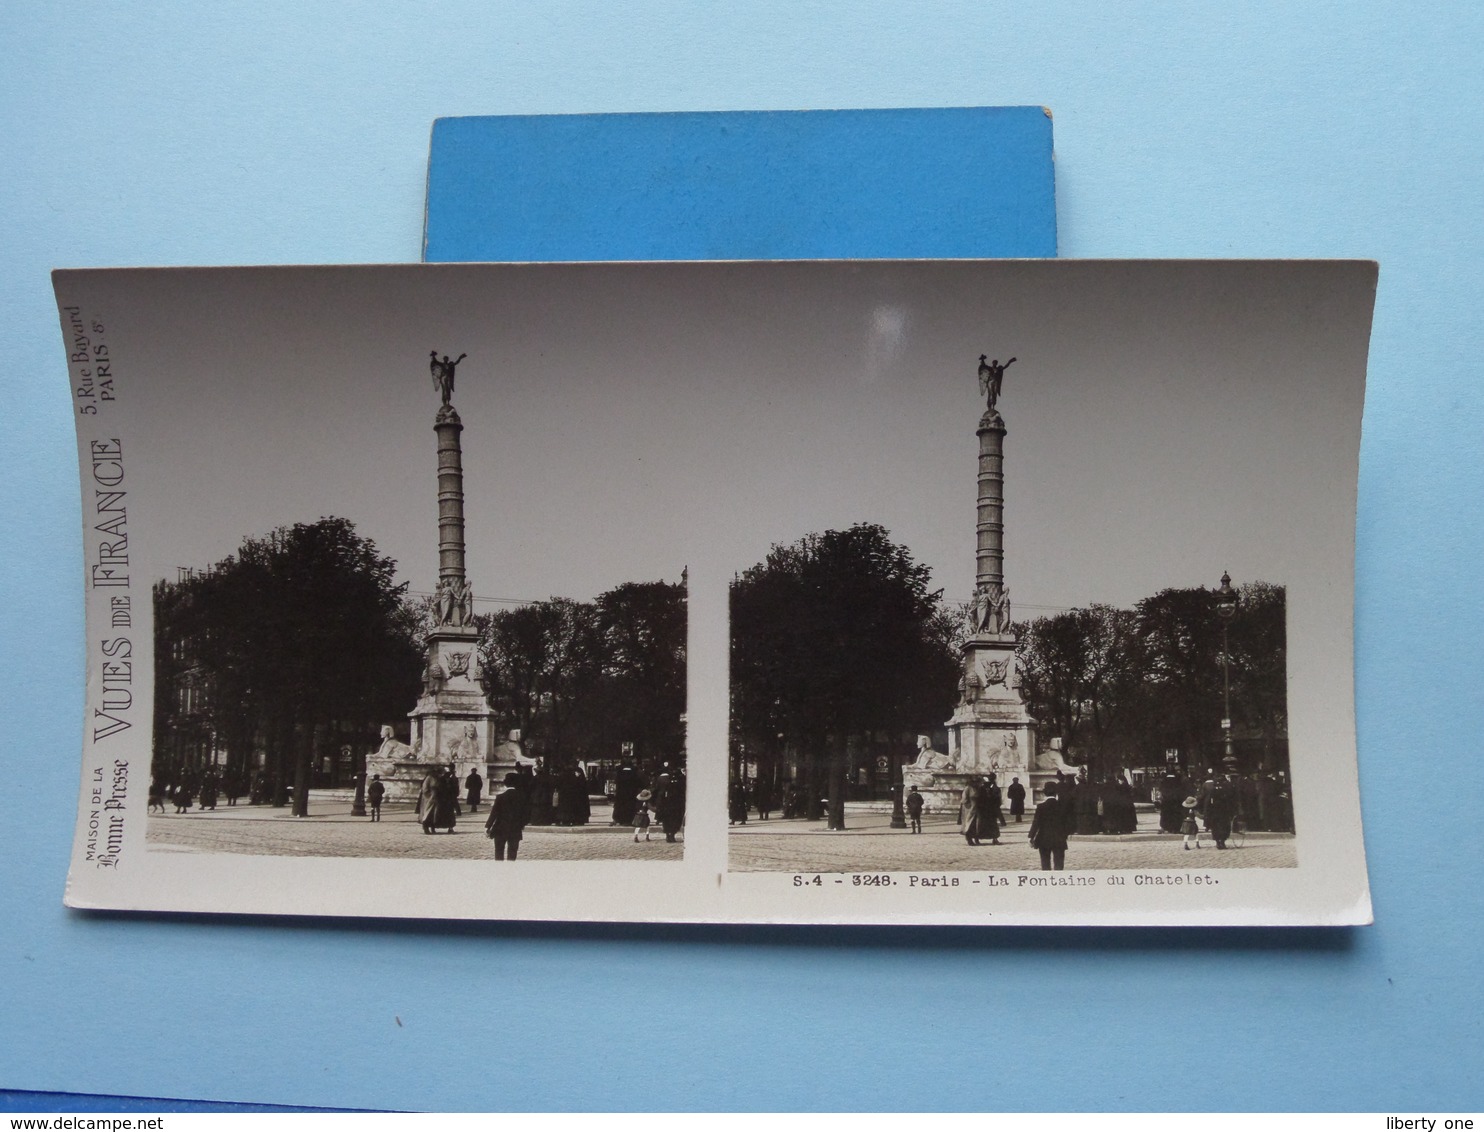 PARIS : La Fontaine Du Chatelet : S. 4 - 3248 ( Maison De La Bonne Presse VUES De FRANCE ) Stereo Photo ! - Stereoscopio